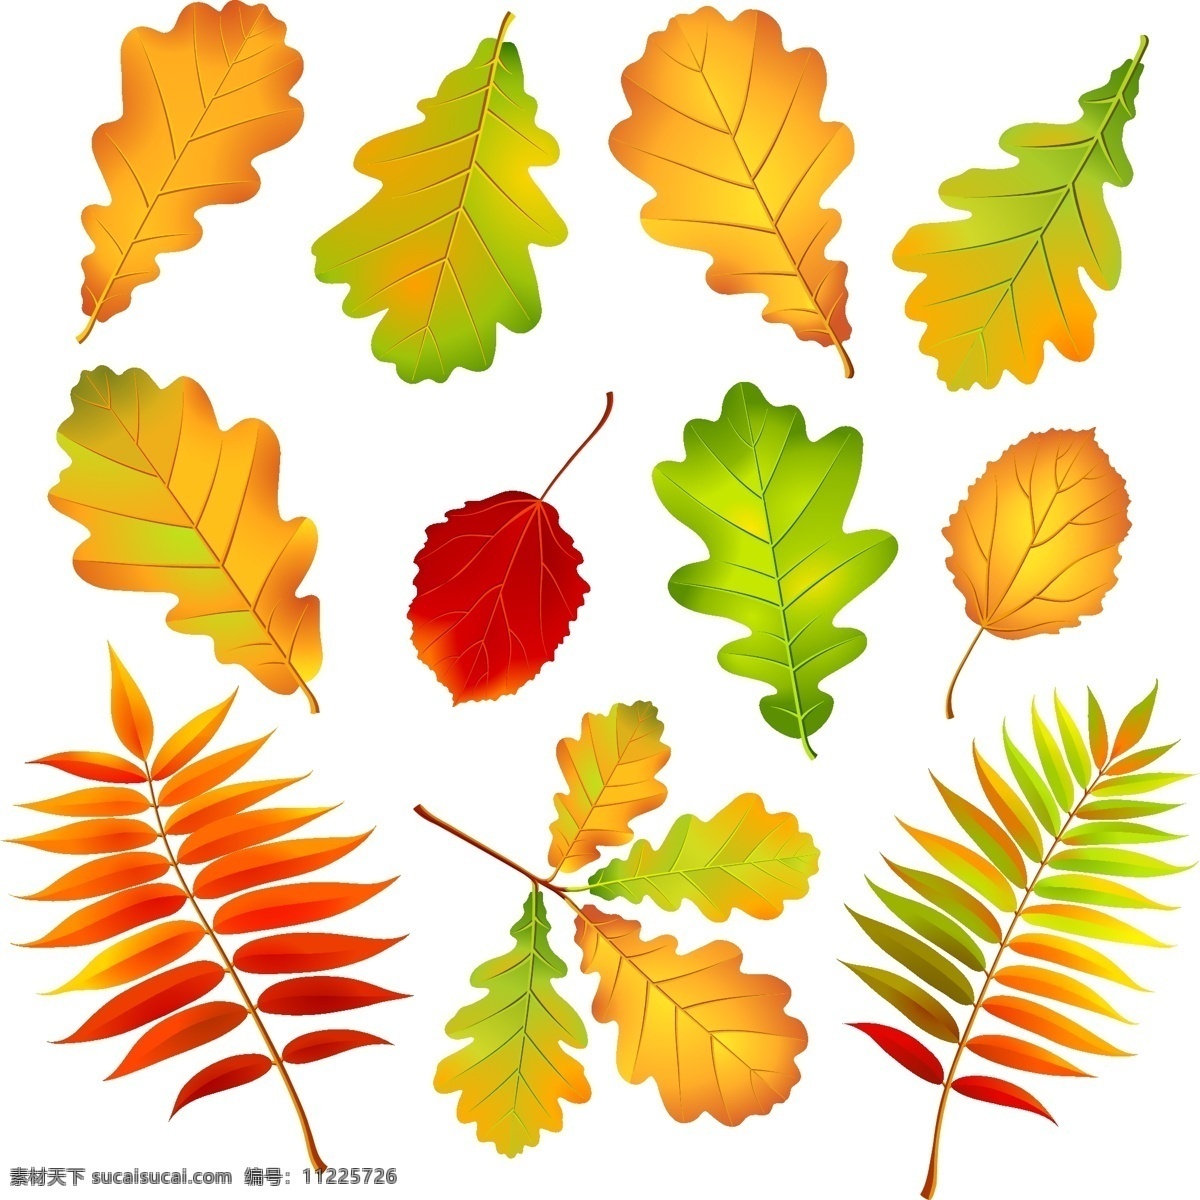 彩叶 向量 集 秋天的落叶 叶 向量的植物 离开 秋天 叶子 矢量图 其他矢量图